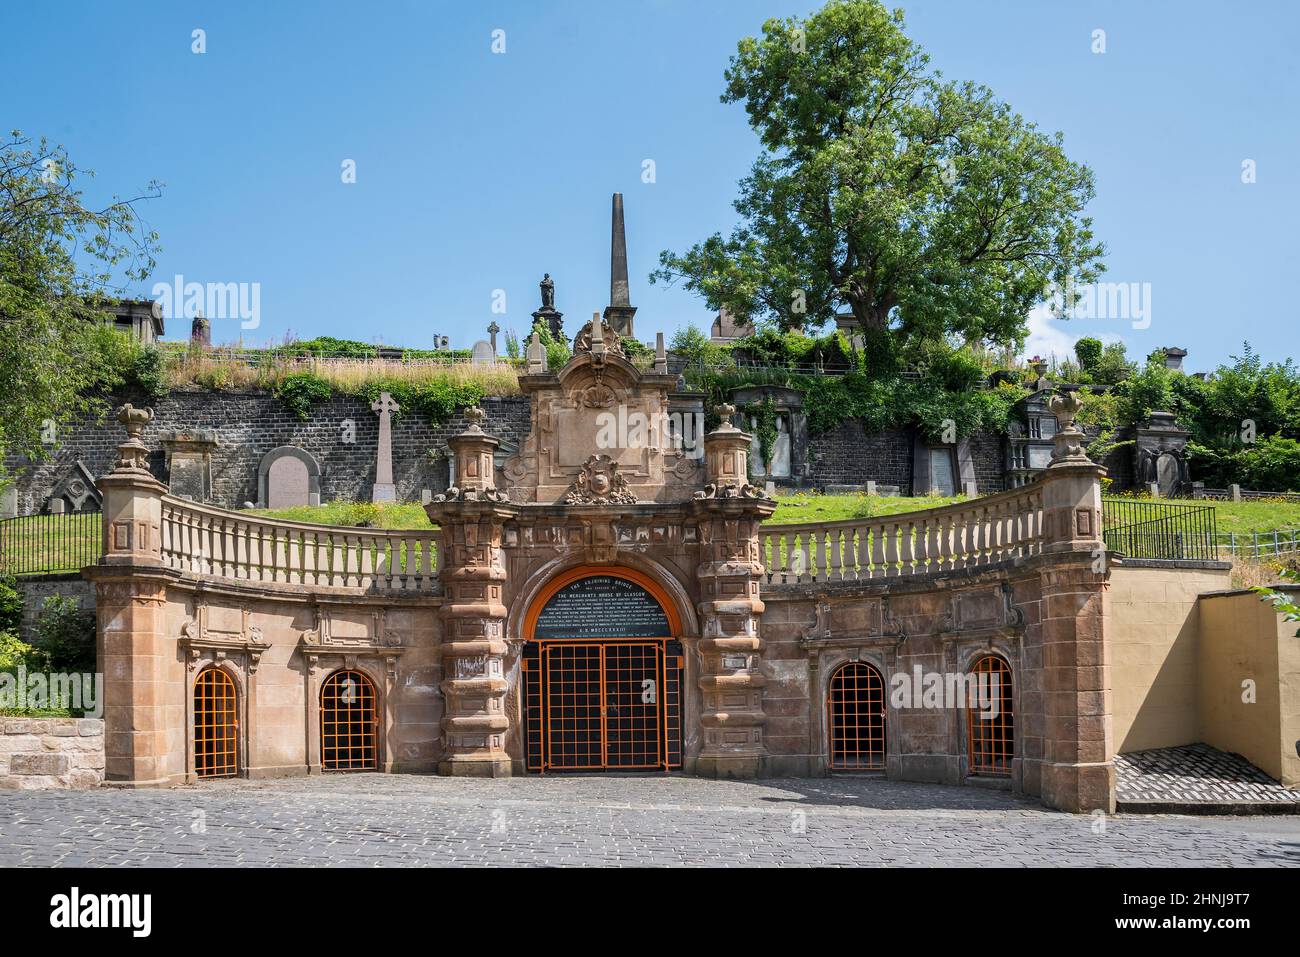 The Facade entrance to Glasgow Necropolis, Scotland. Stock Photo